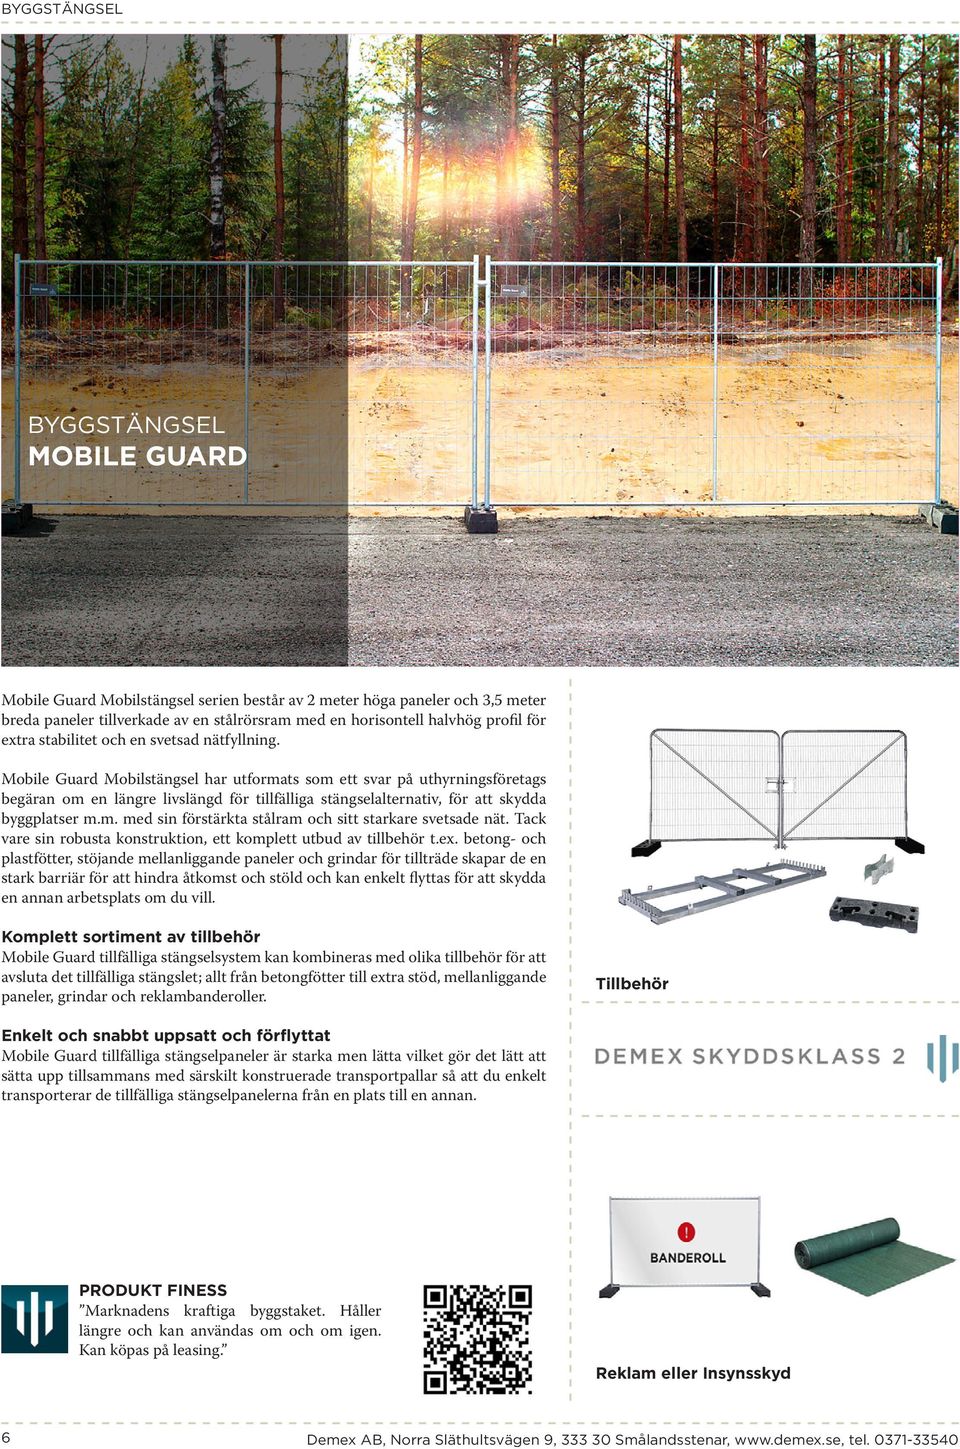 Mobile Guard Mobilstängsel har utformats som ett svar på uthyrningsföretags begäran om en längre livslängd för tillfälliga stängselalternativ, för att skydda byggplatser m.m. med sin förstärkta stålram och sitt starkare svetsade nät.